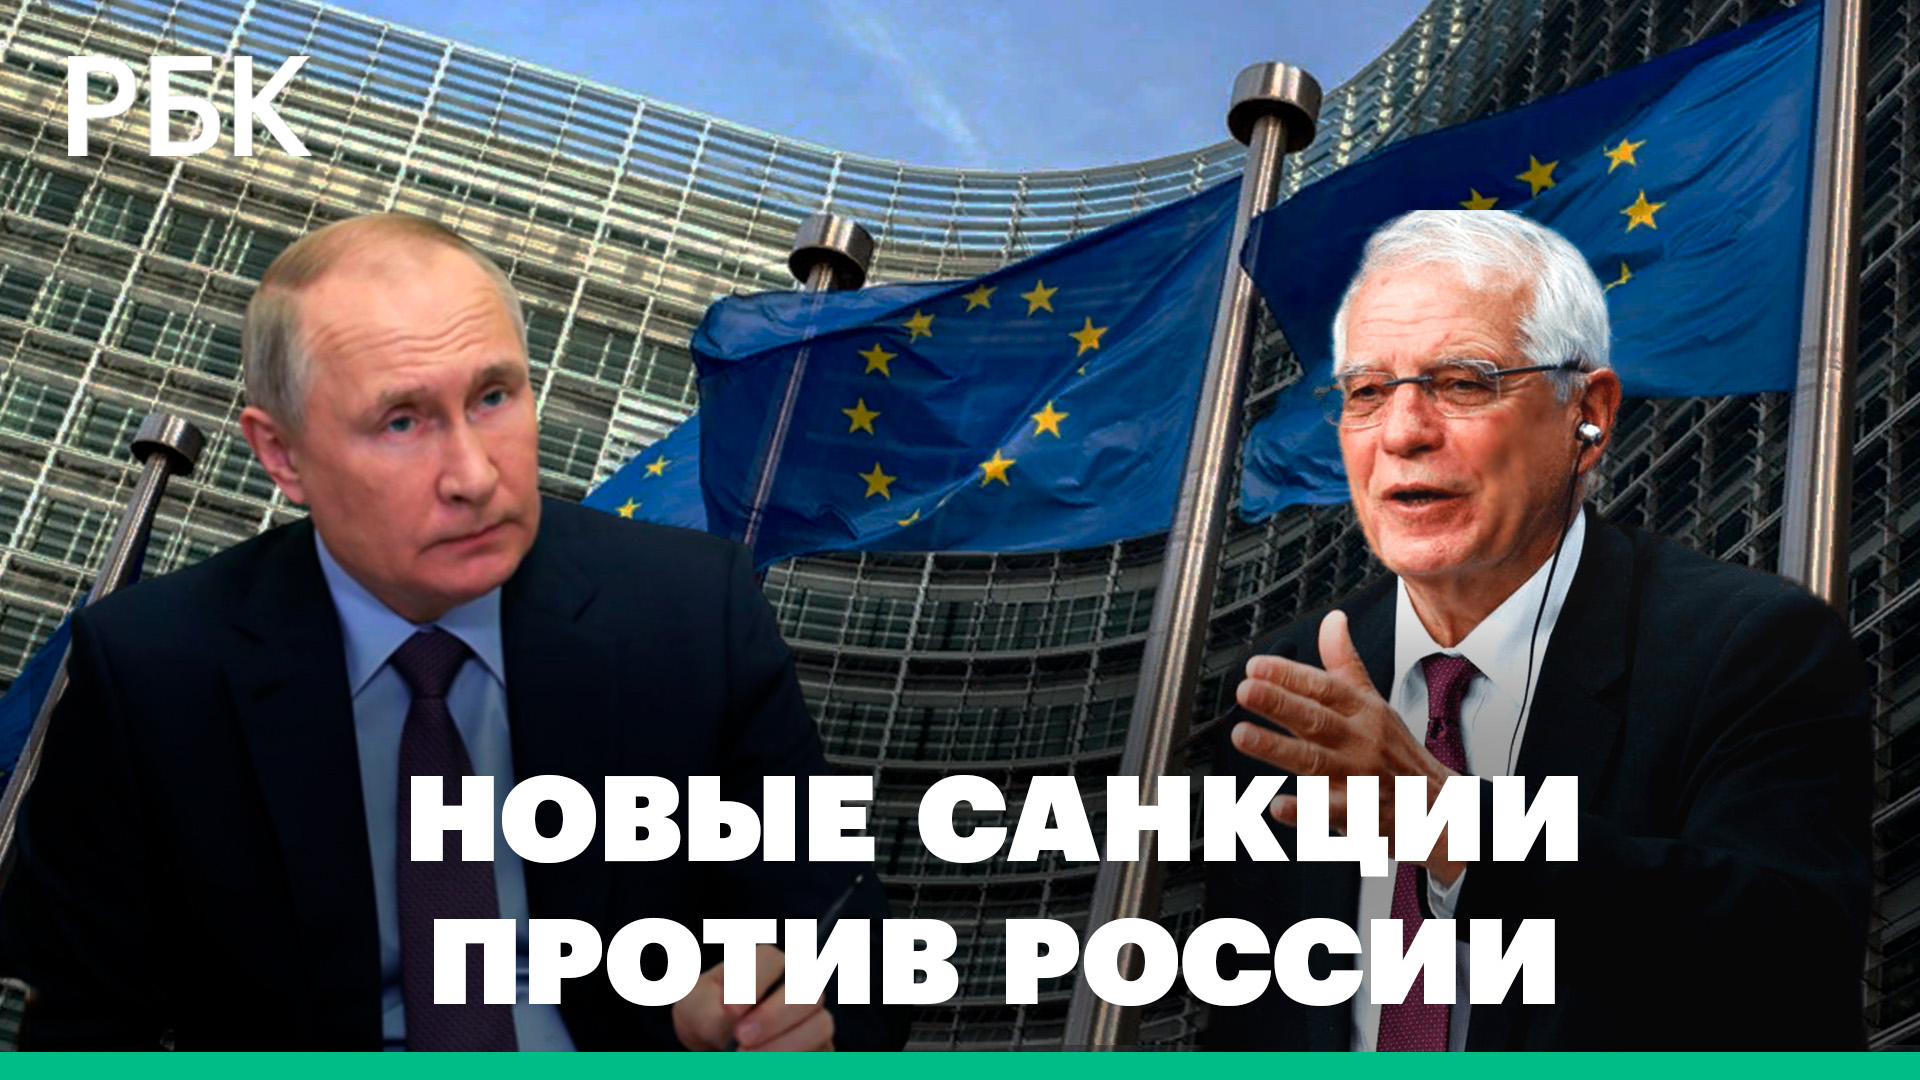 Что будет в новом пакете санкций ЕС против России?